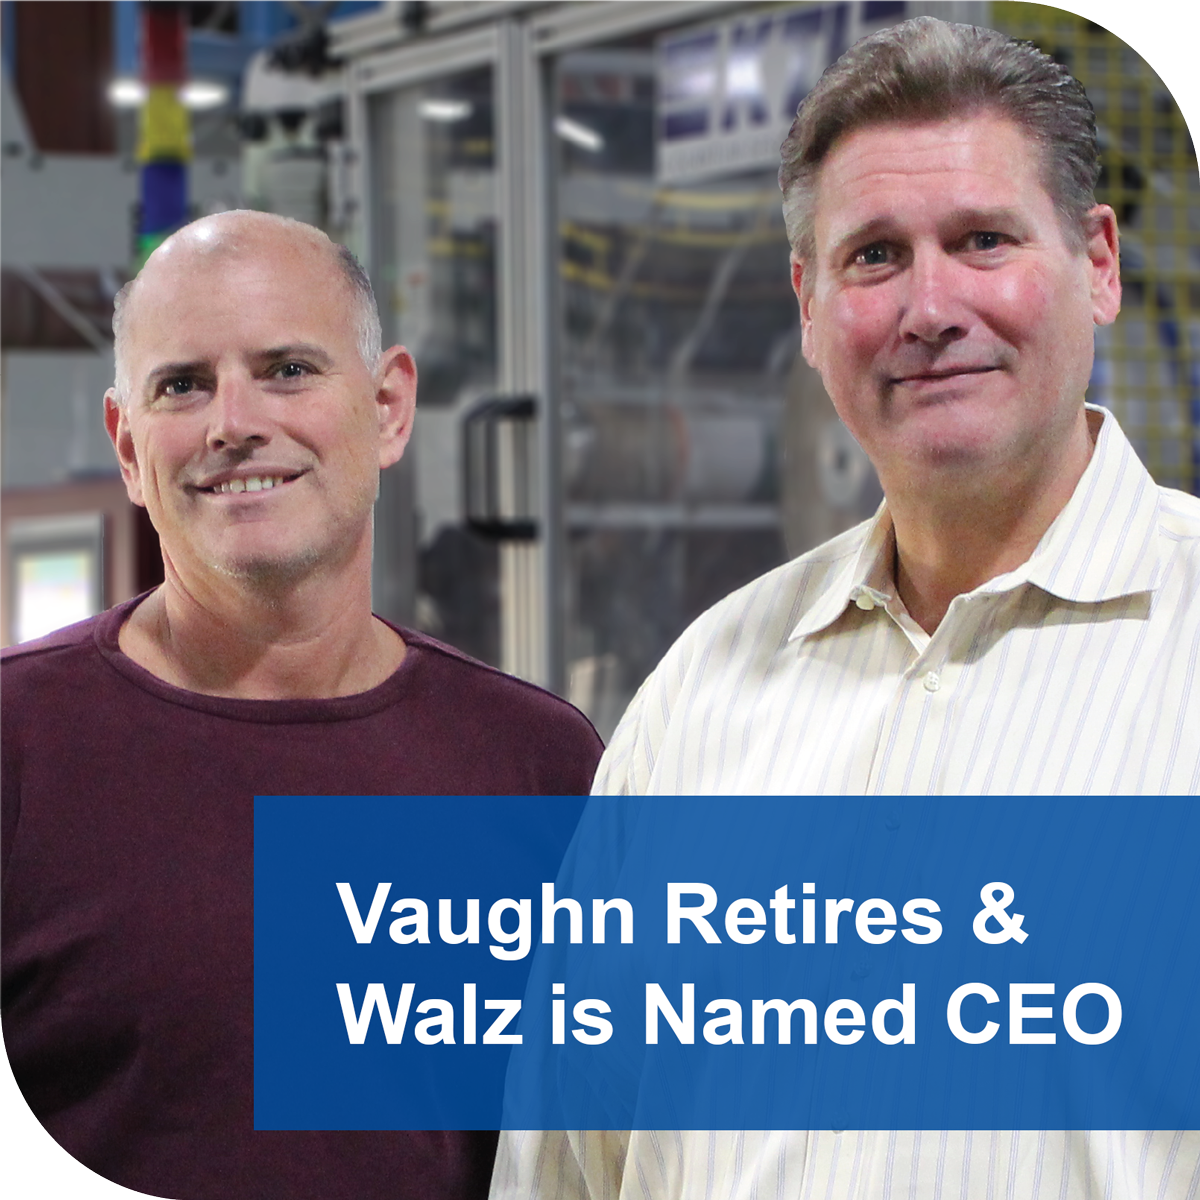 Vaughn Retires & Walz is Named CEO